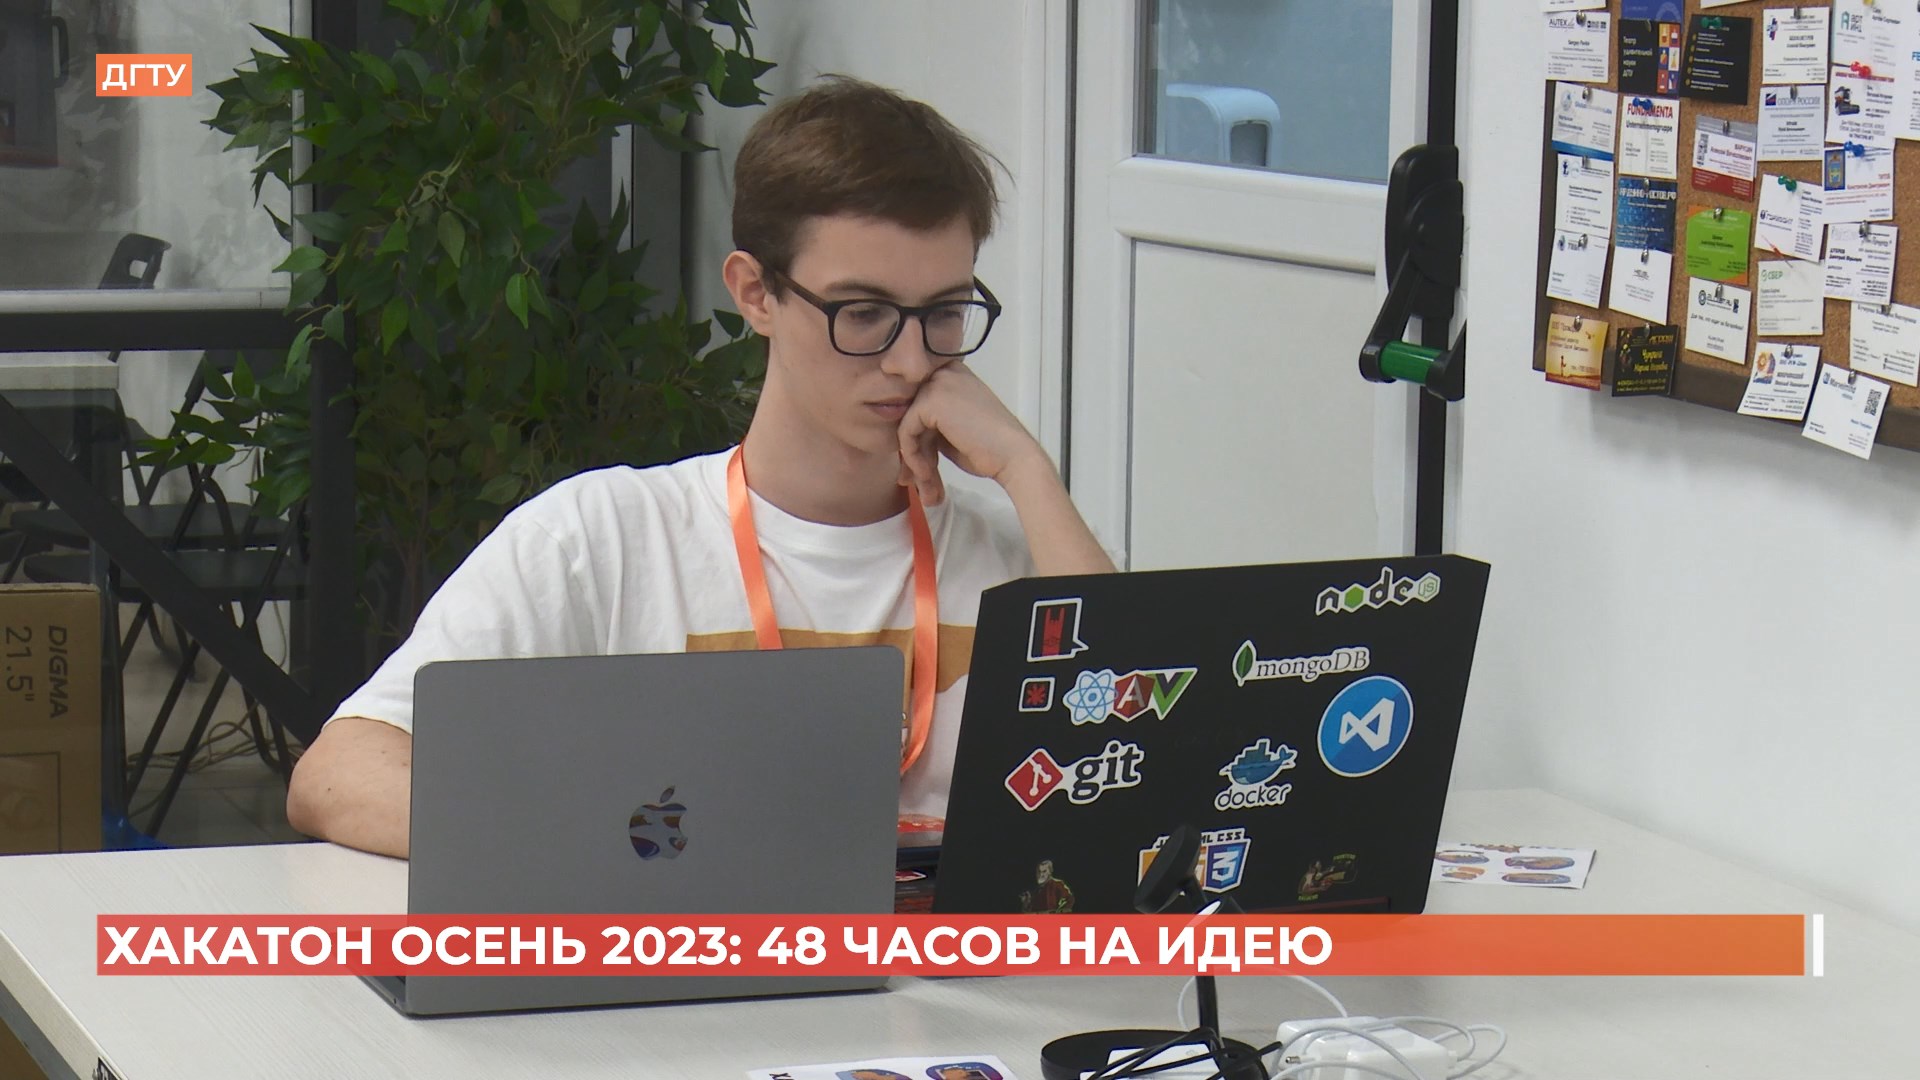 Форум программных разработчиков «Хакатон осень 2023» провели в Ростове